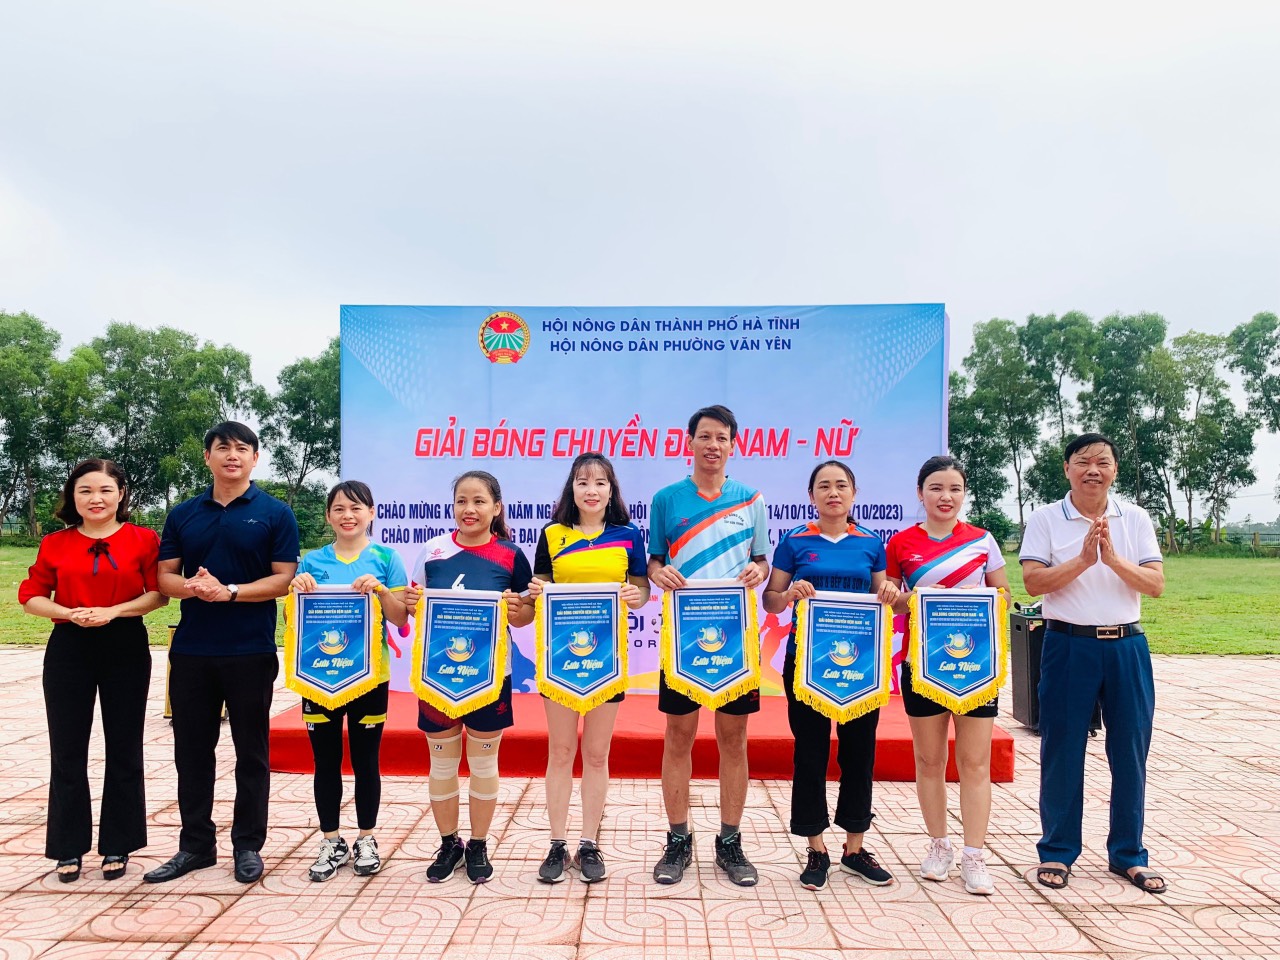 Hội Nông dân phường Văn Yên, thành phố Hà Tĩnh khai mạc giải bóng chuyền đệm nam, nữ năm 2022